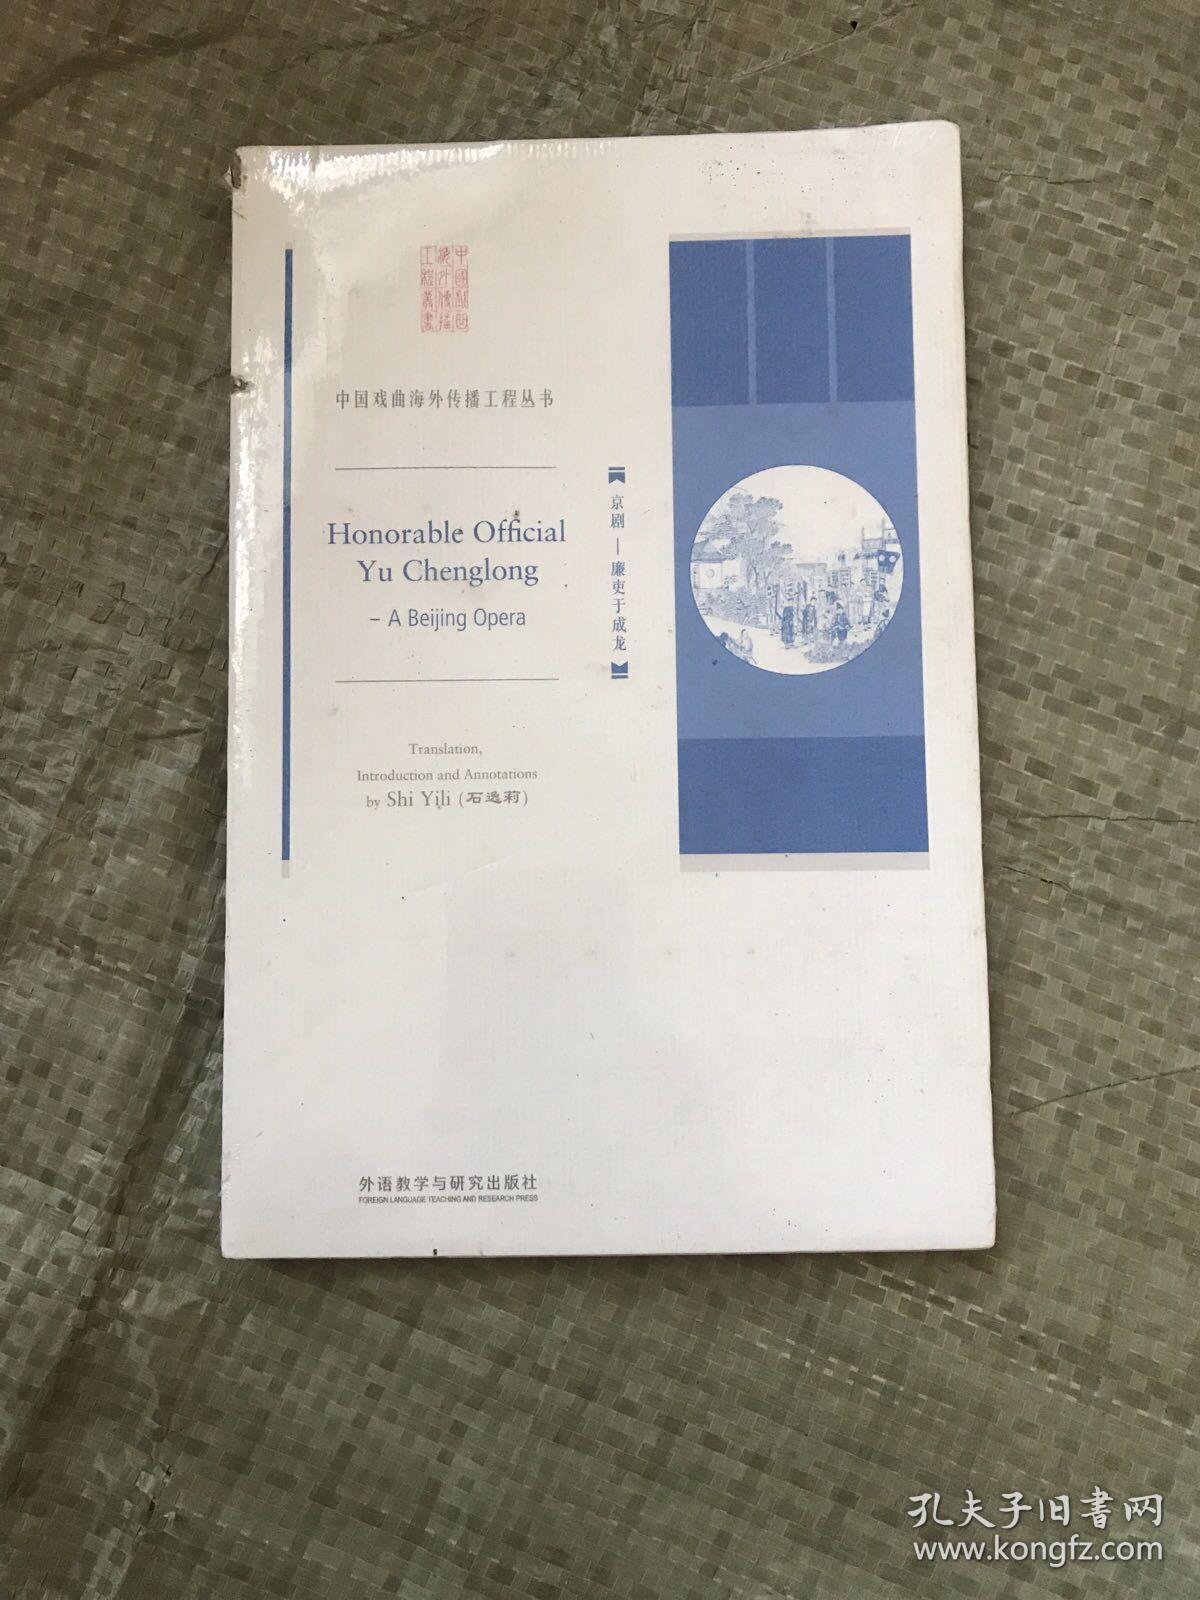 中国戏曲海外传播工程丛书【京剧——廉吏于成龙】（英文）